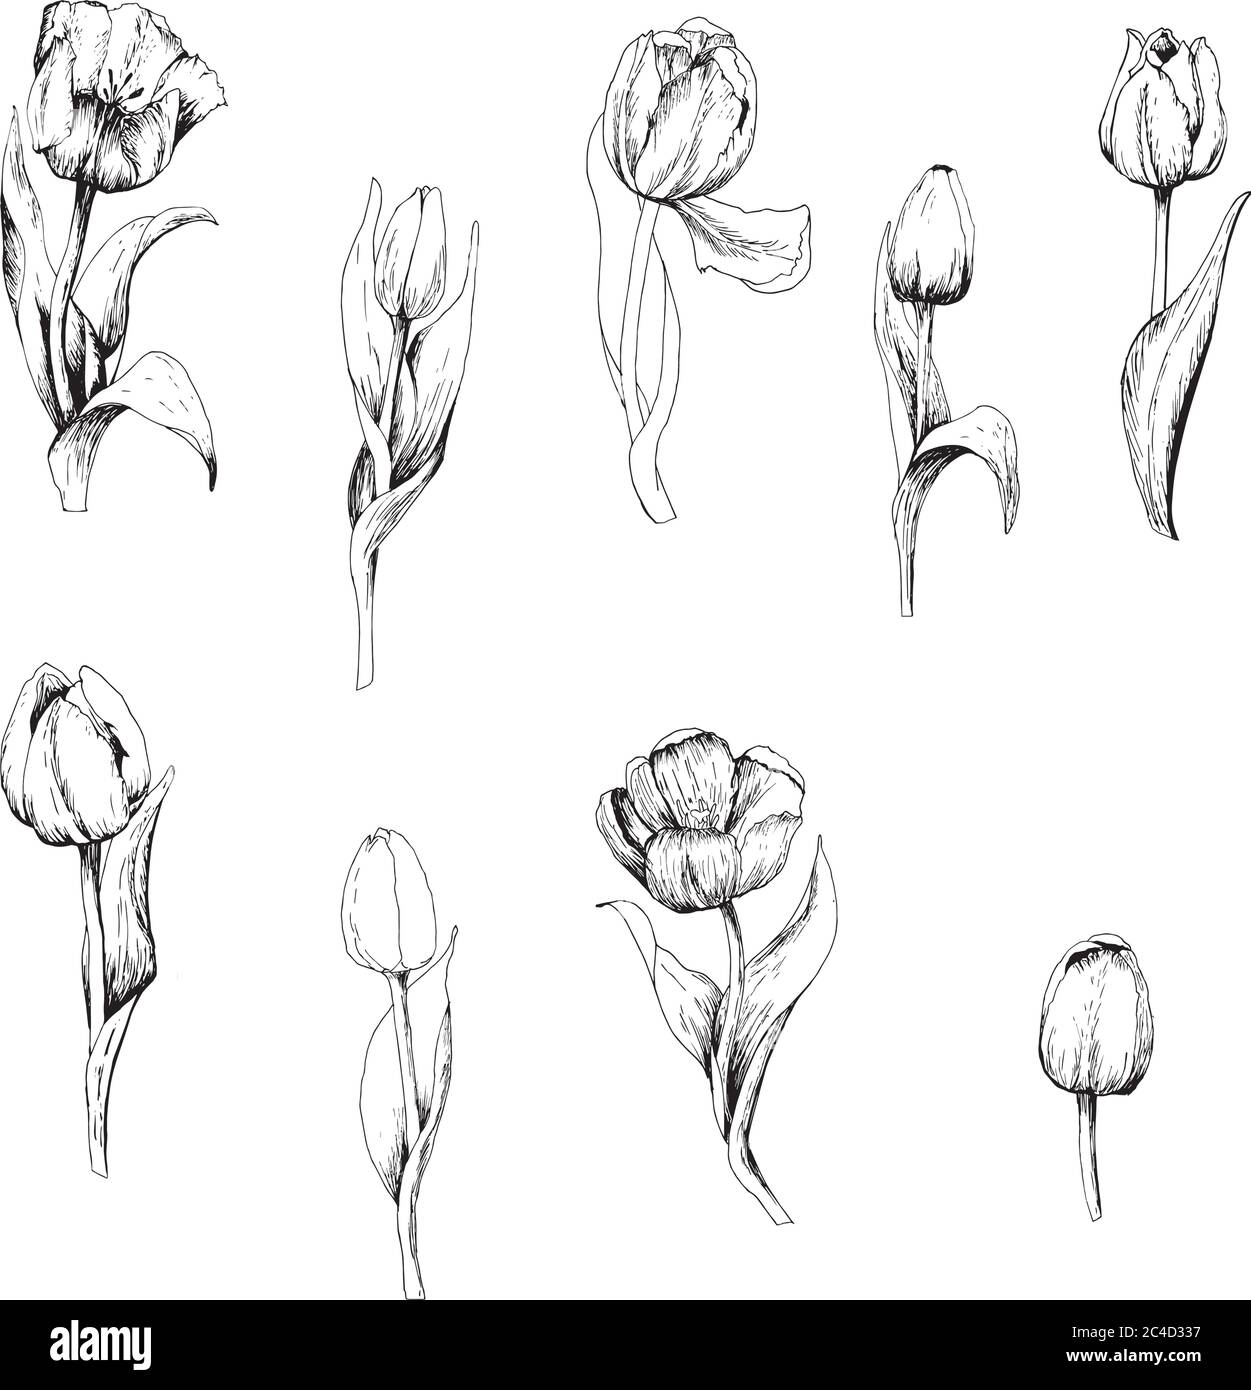 Tulip est un ensemble de branches de tulipe dessinées à la main. Esquisse. 9 fleurs isolées sur fond blanc. Illustration vectorielle vintage. Graphiques vectoriels Illustration de Vecteur